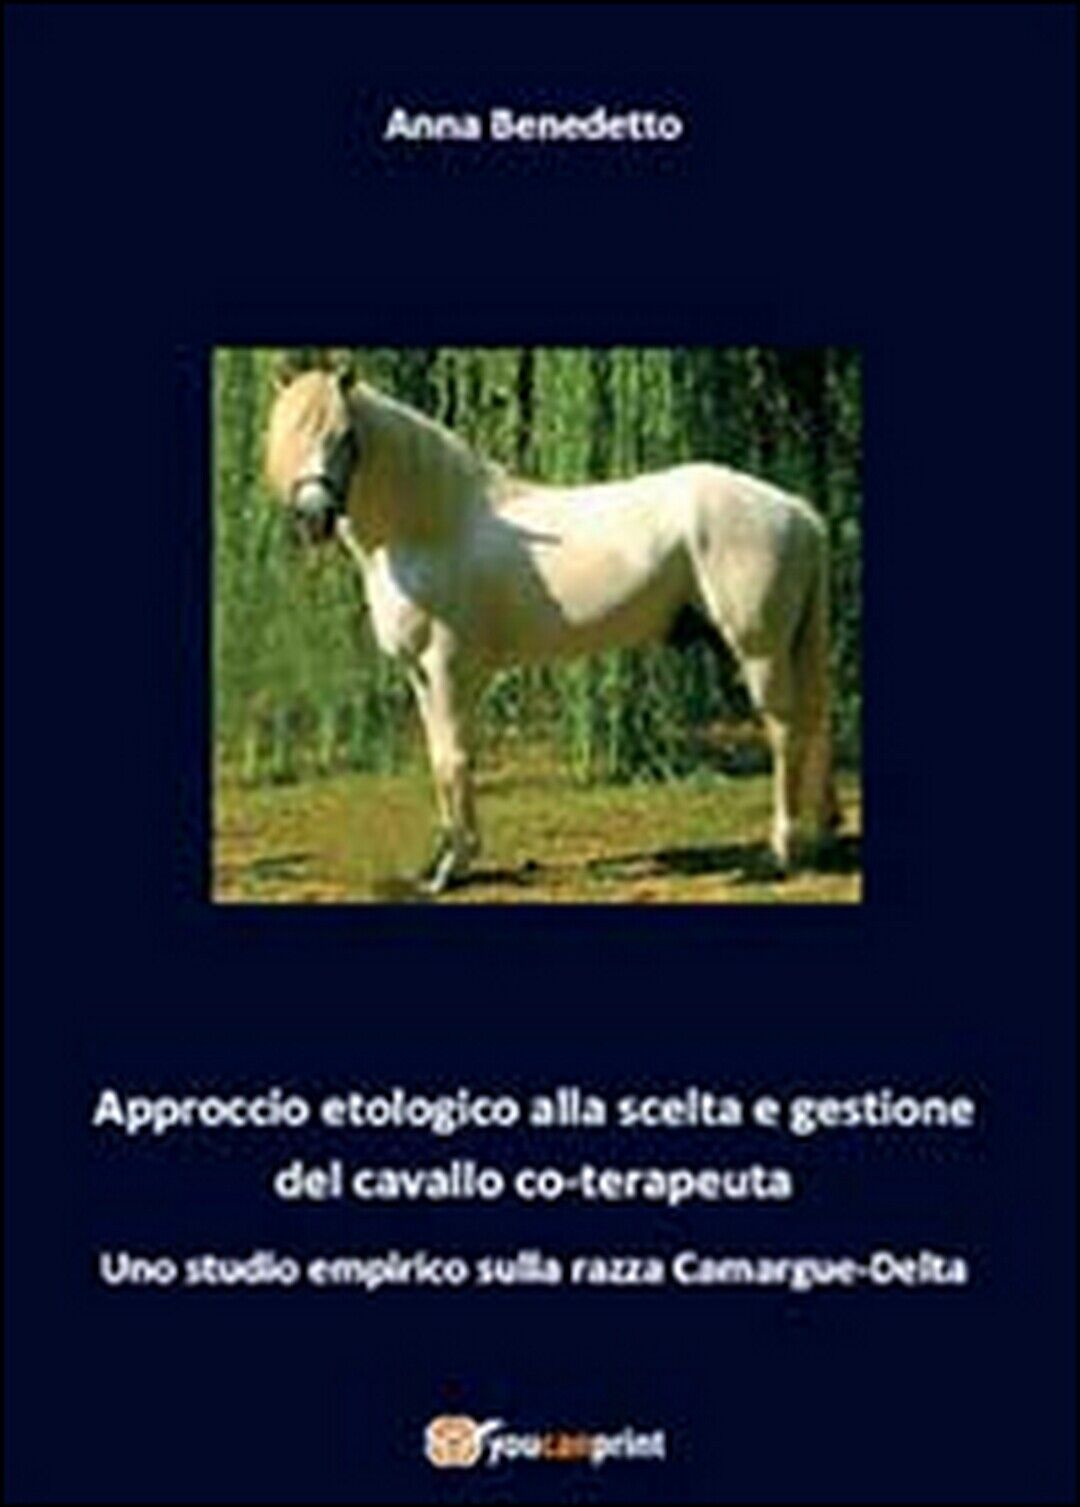 Approccio etologico alla scelta e gestione del cavallo coterapeuta, Youcanprint